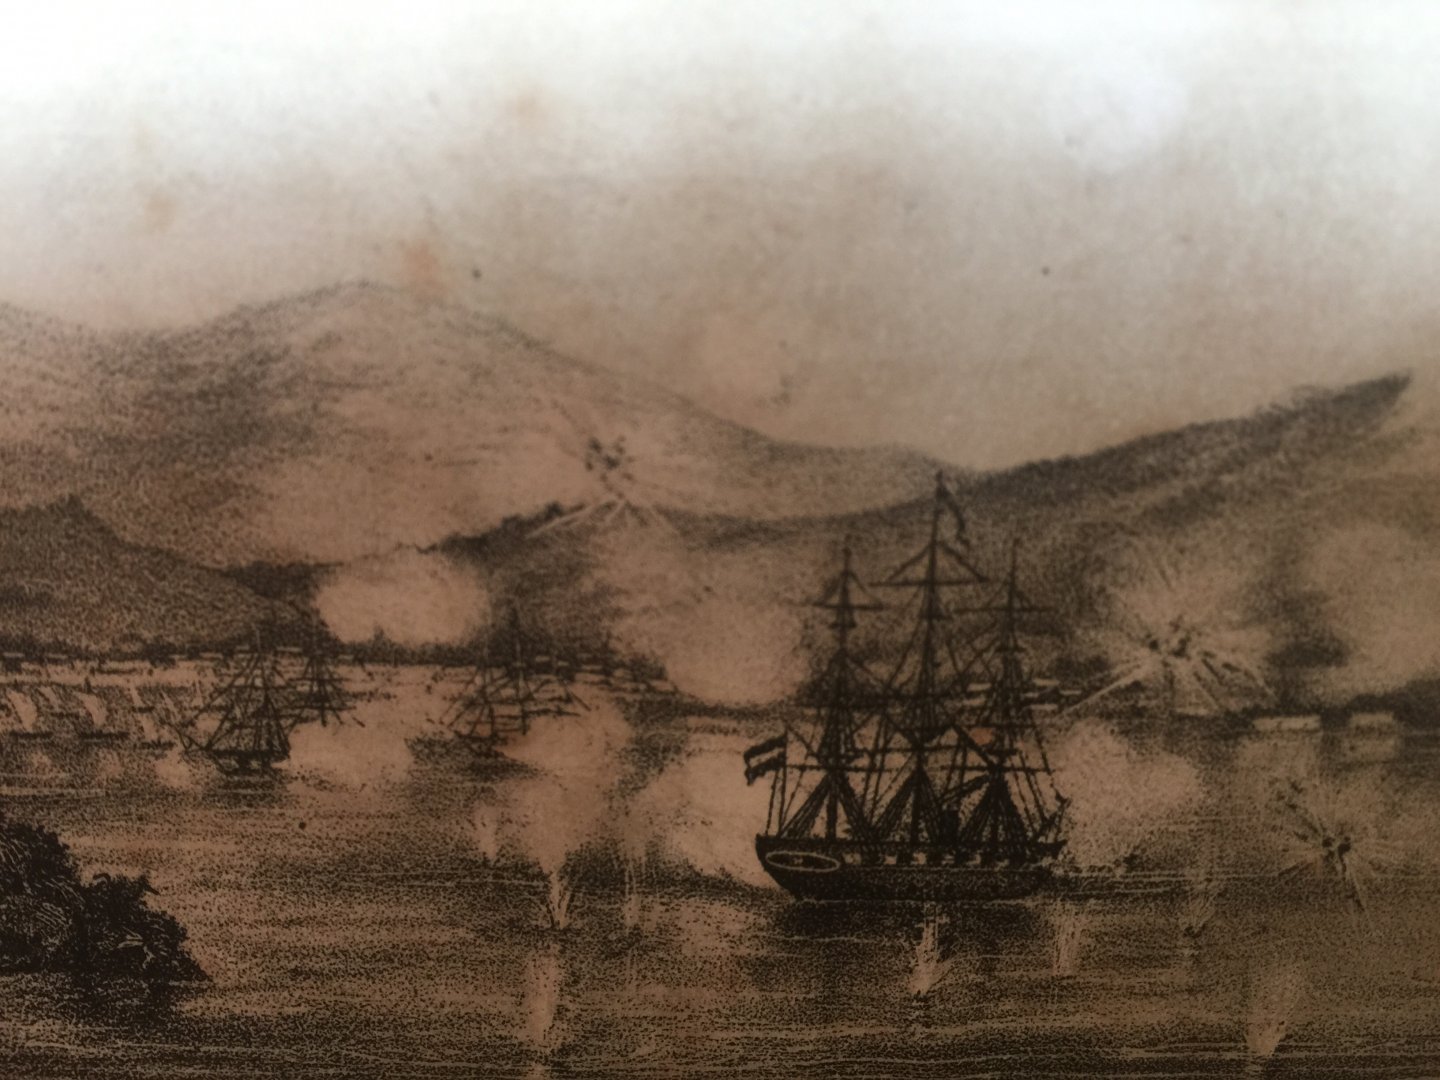 F de Casembroot - DE MEDUSA in de WATEREN VAN JAPAN in 1863 en 1864, Tweede druk met twee kaartjes en een plaatje